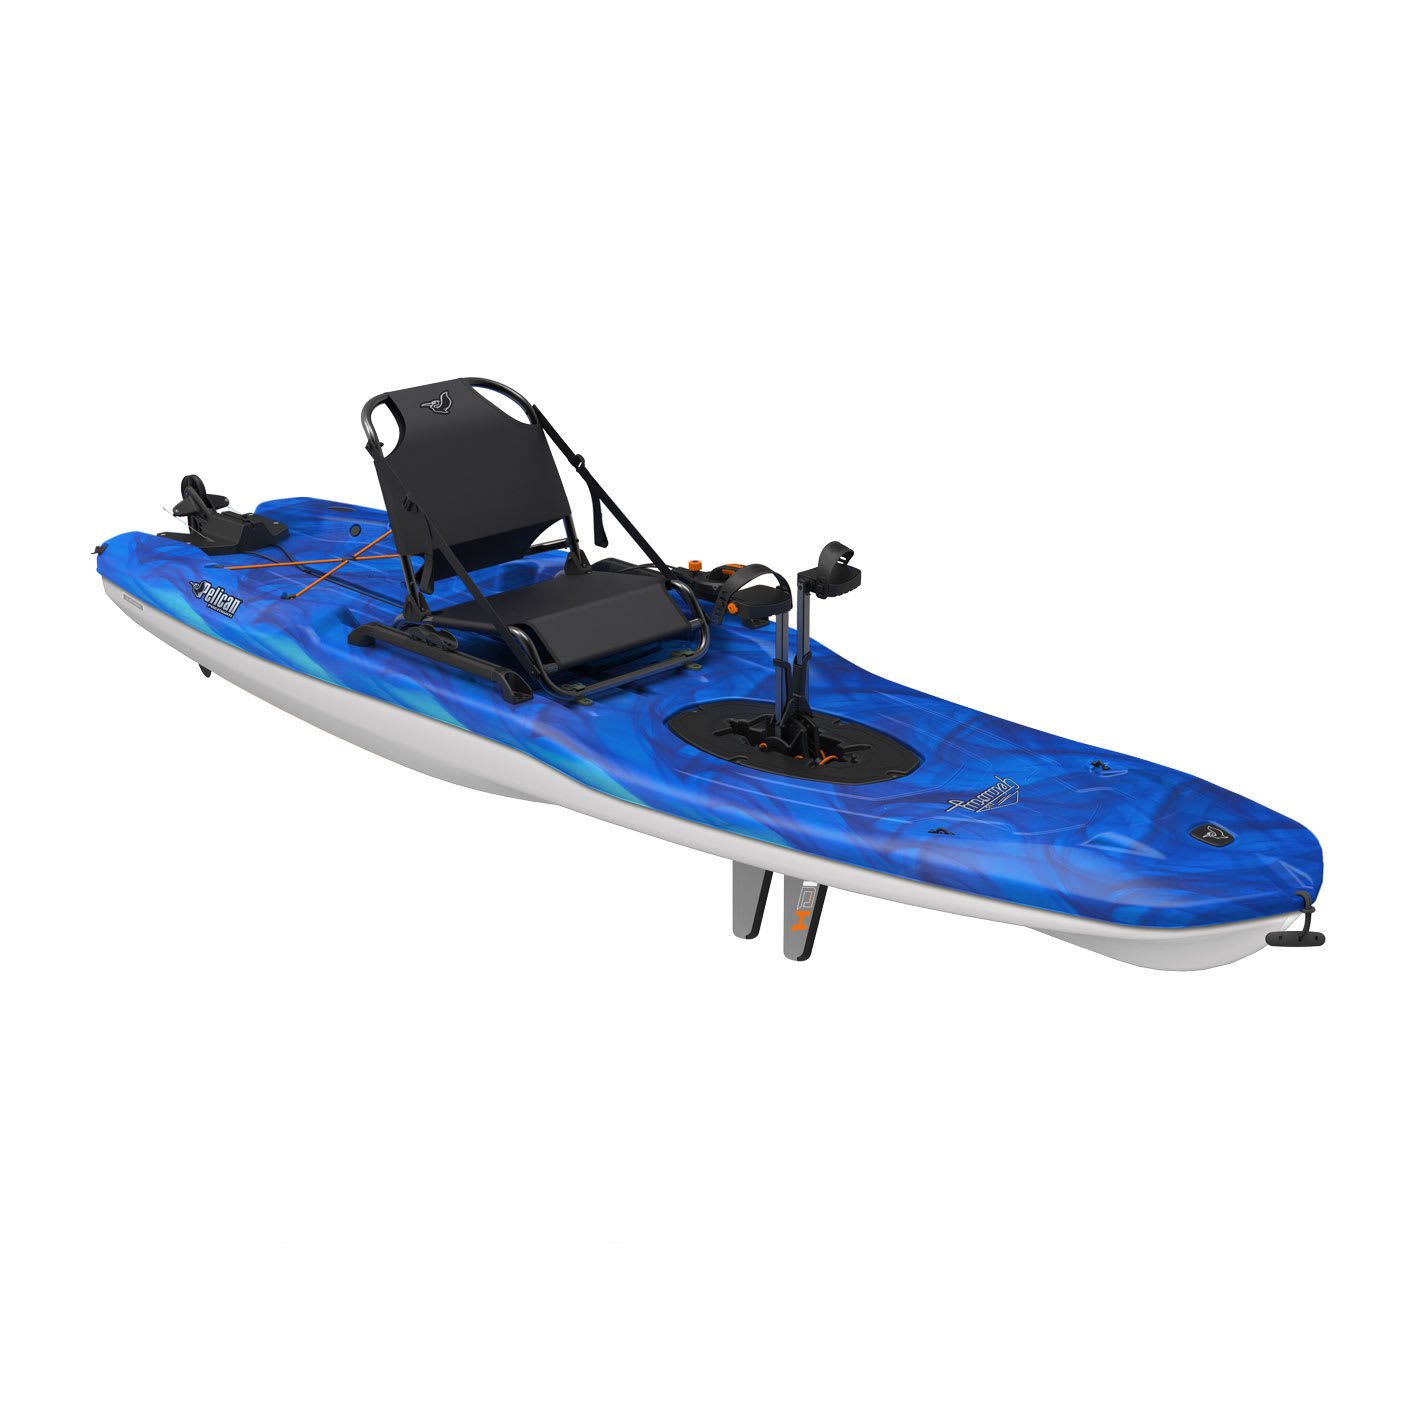 New kayaks in stock – 0ctober 24, 2021